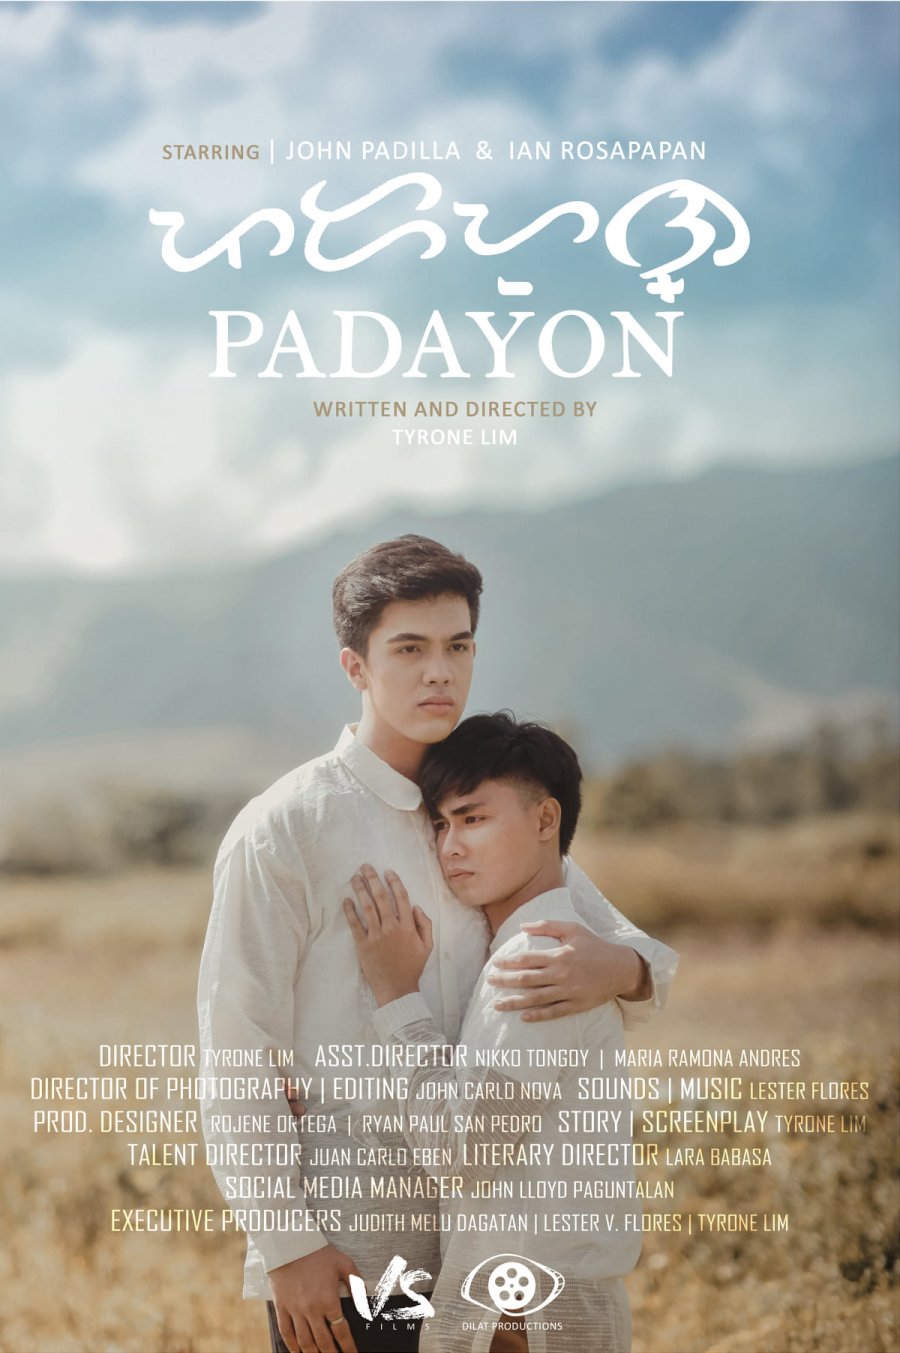 Padayon - series boys love